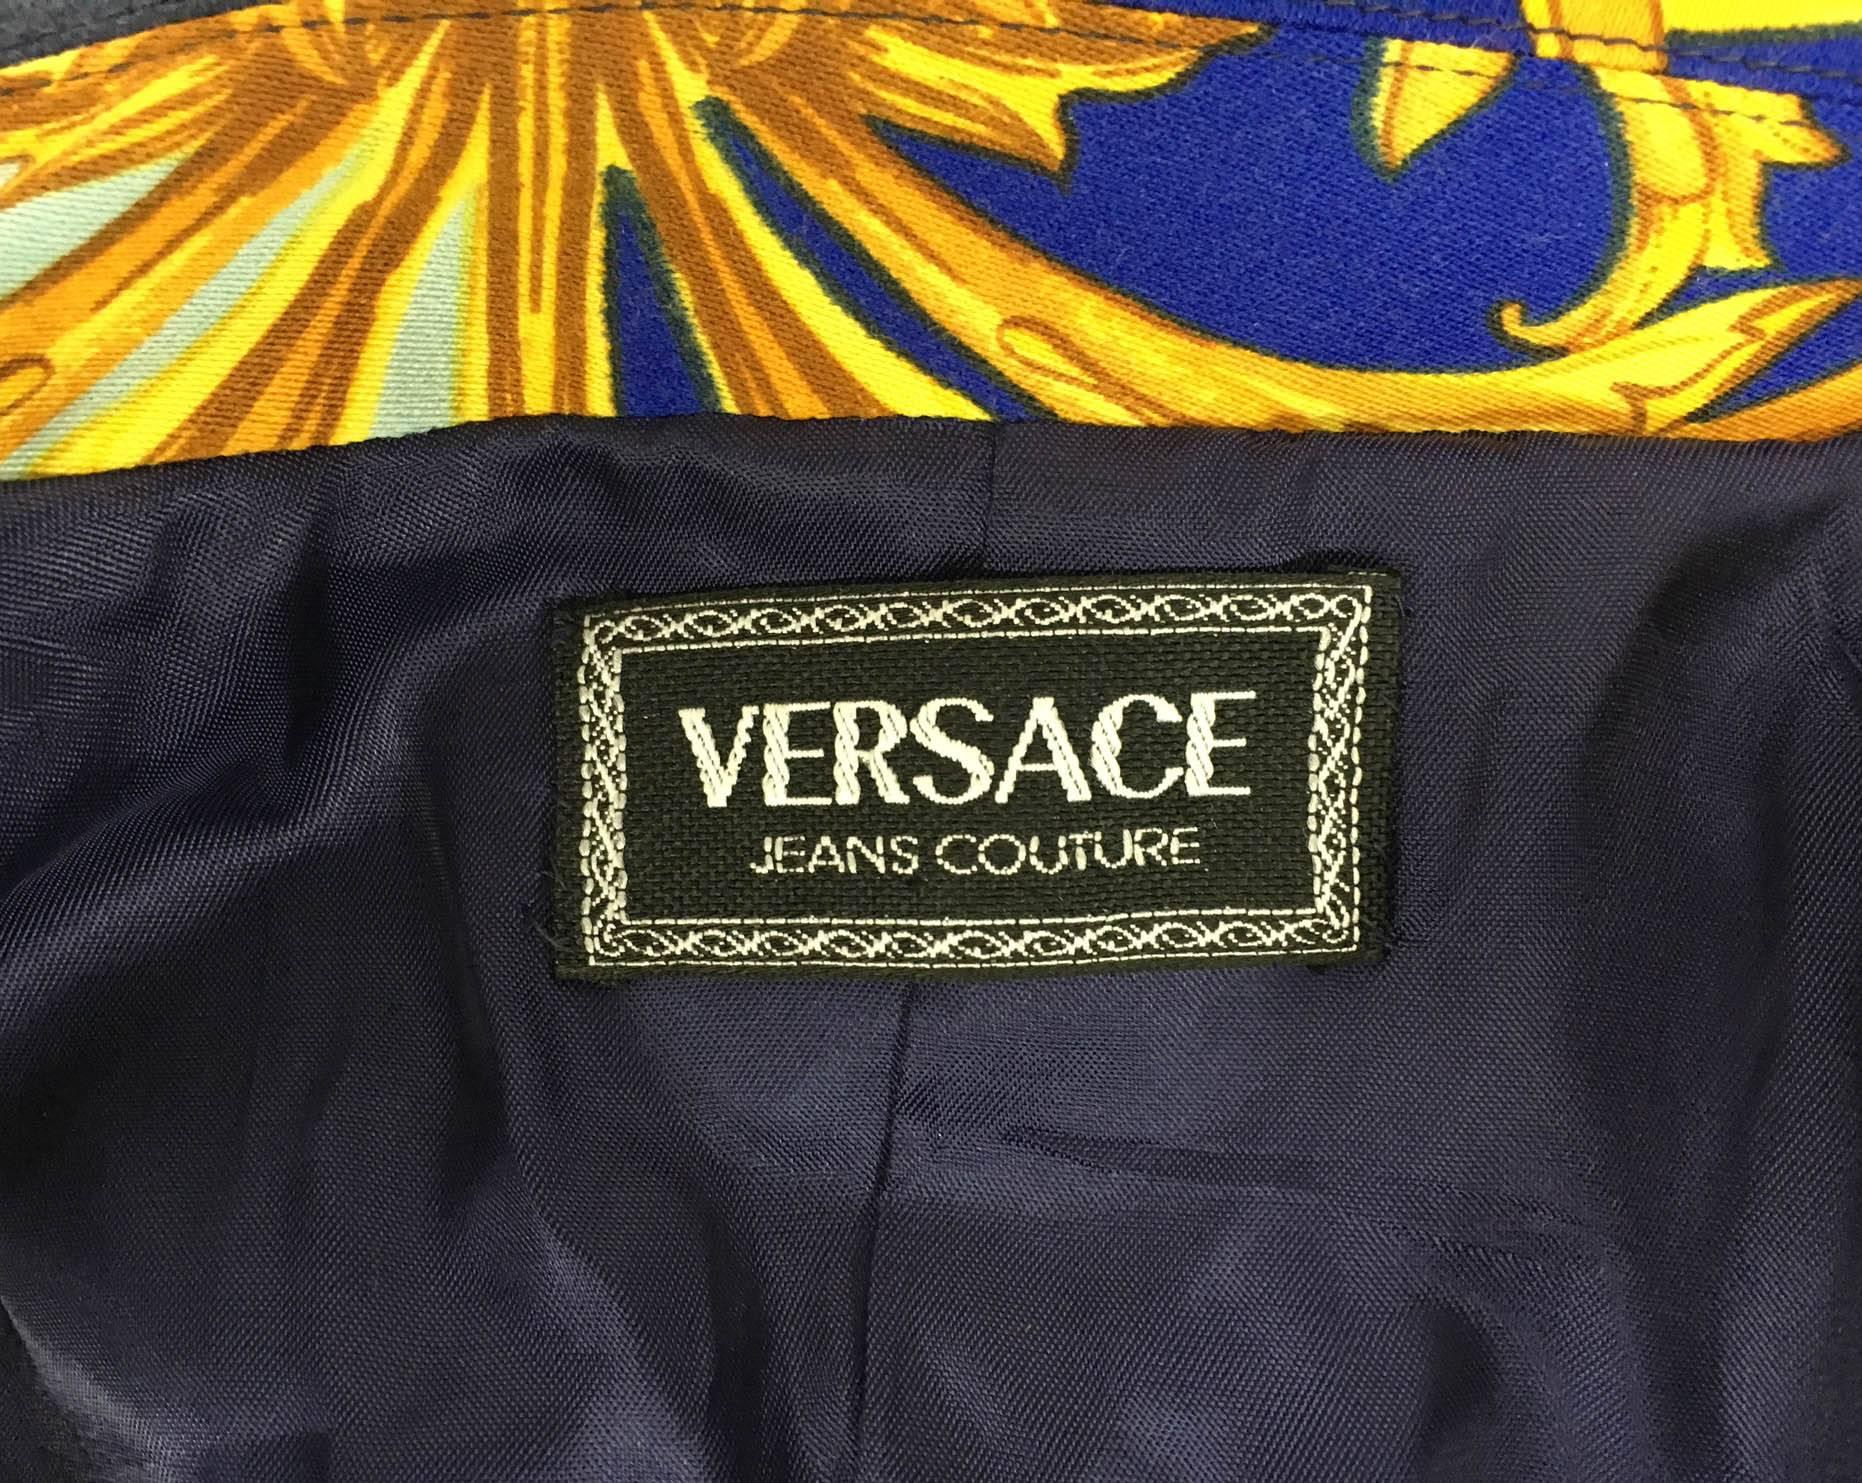 Versace Baroque Print Jacket - 1990s 5